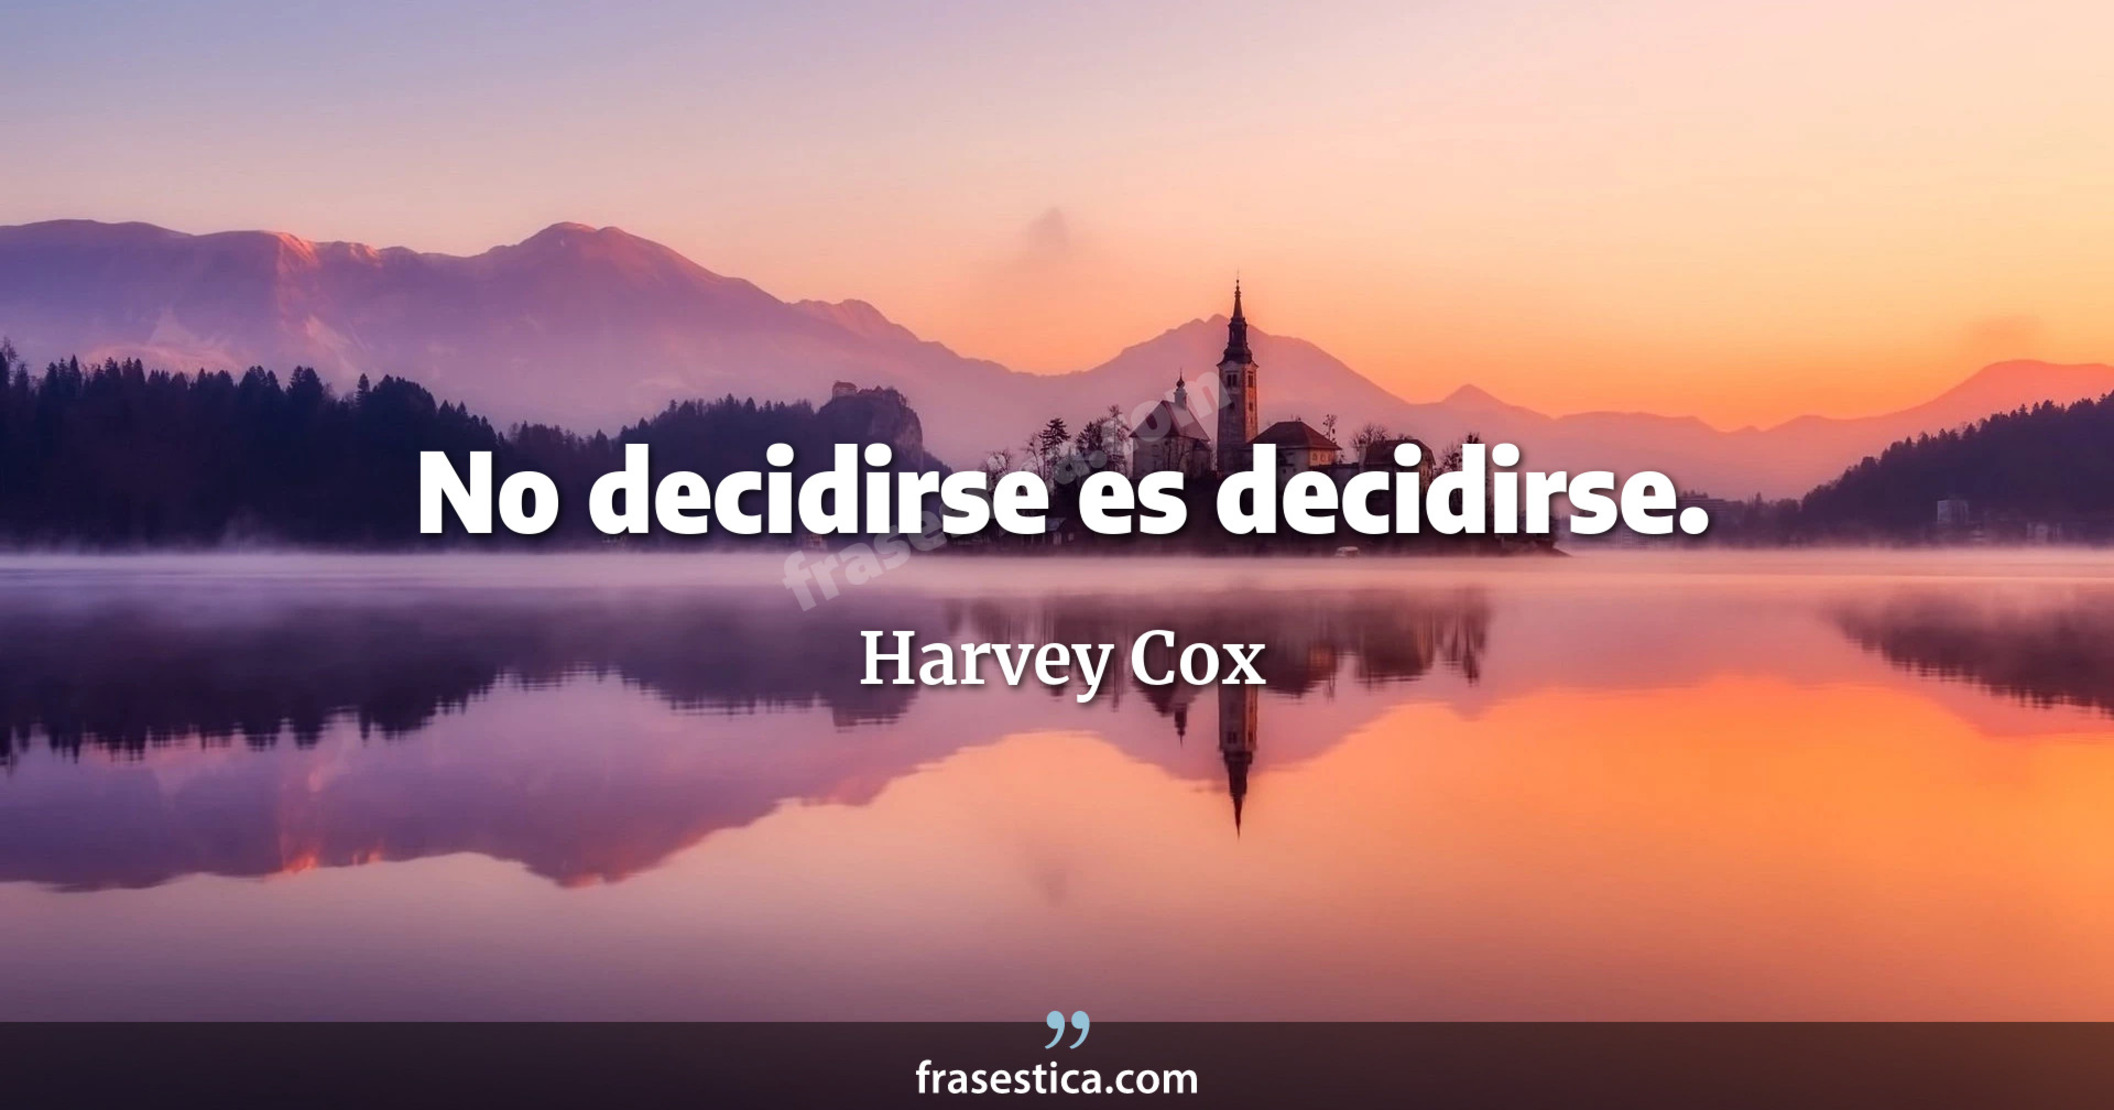 No decidirse es decidirse. - Harvey Cox